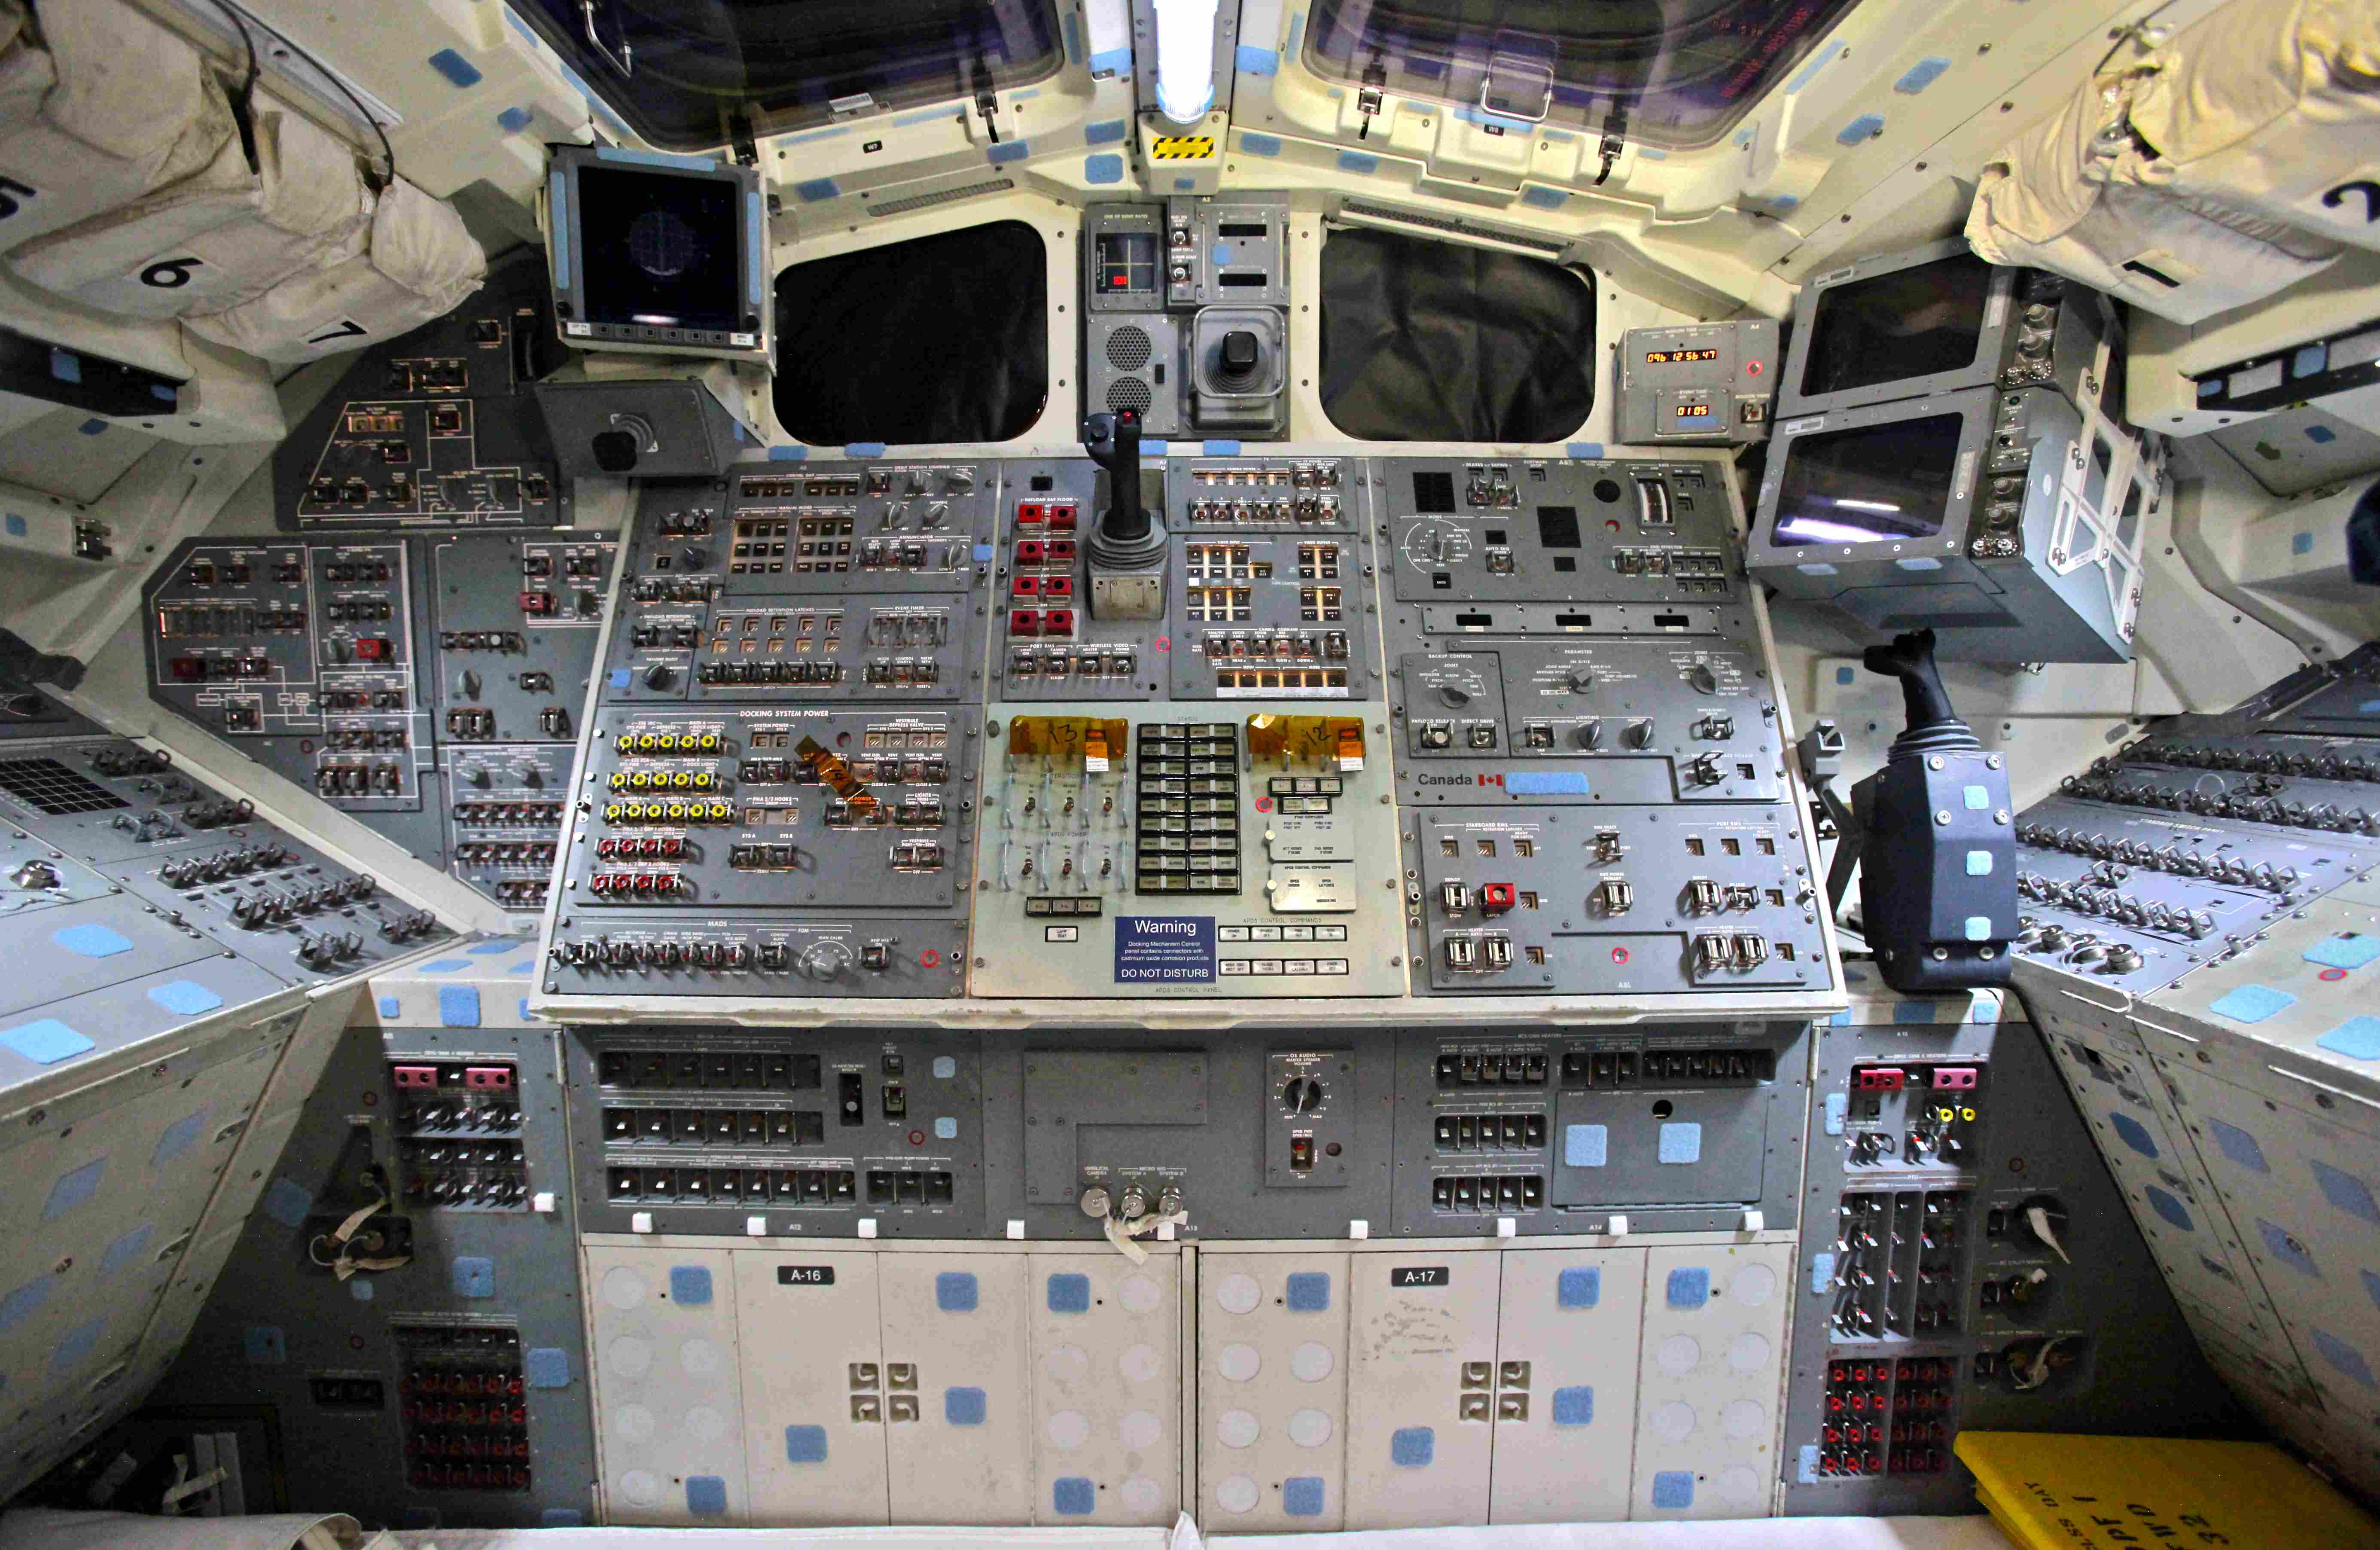 Images Wikimedia Commons/16 Steve Jurvetson Space_Shuttle_Endeavour's_Flight_Deck.jpg